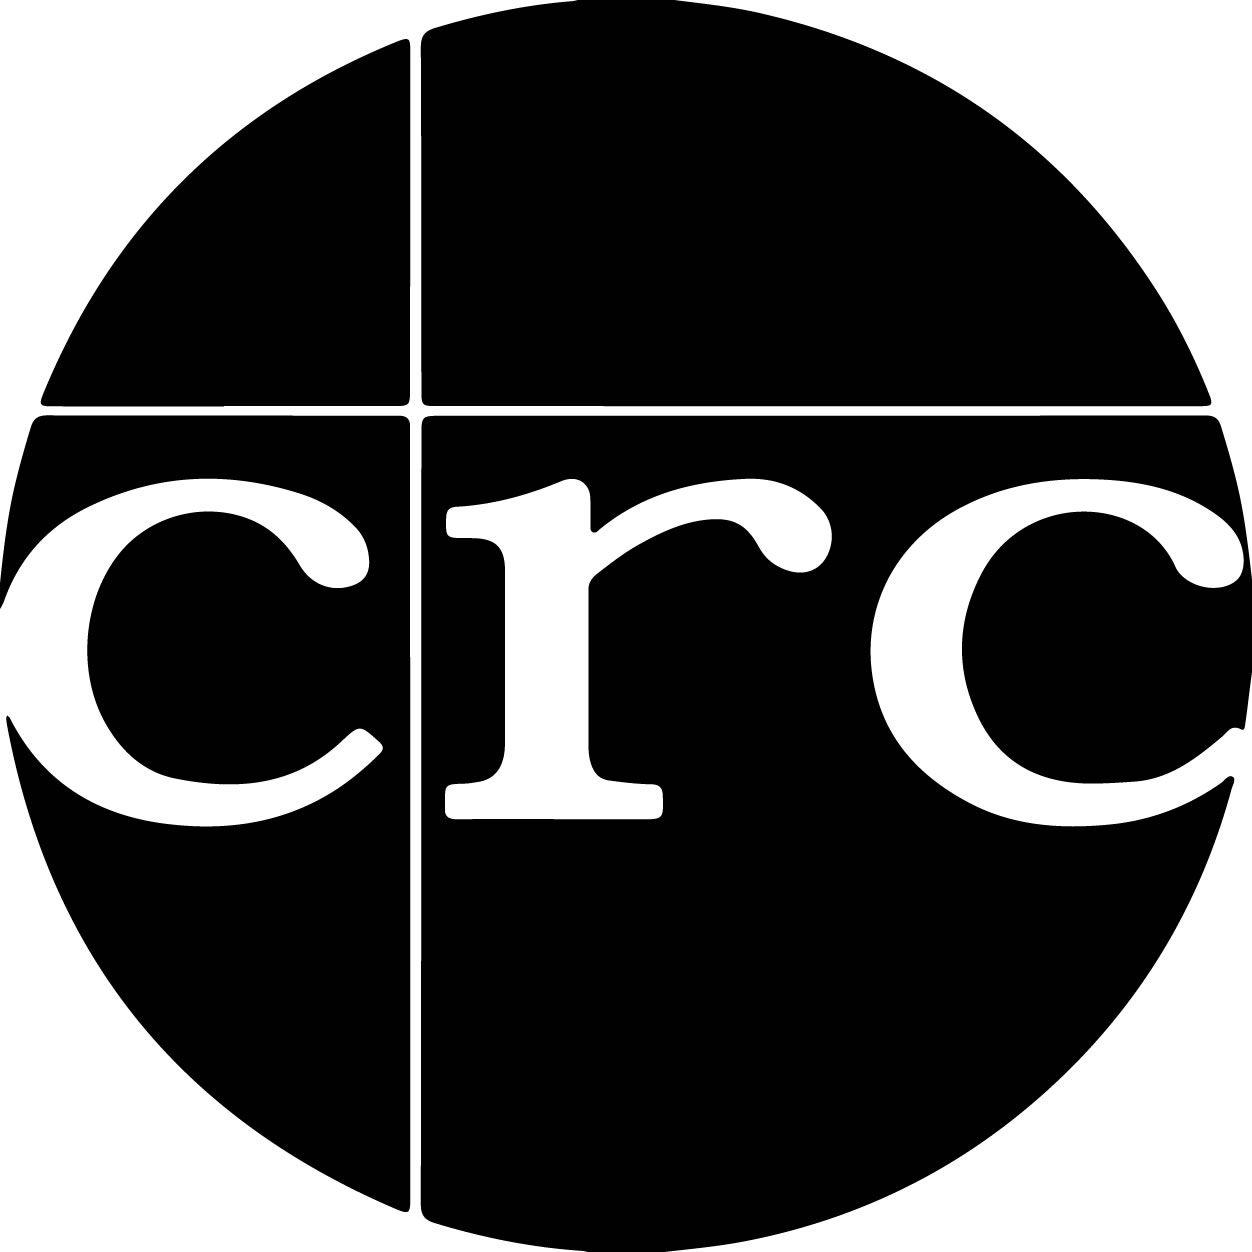 CRC Logo - CRC: Christian Revival Church